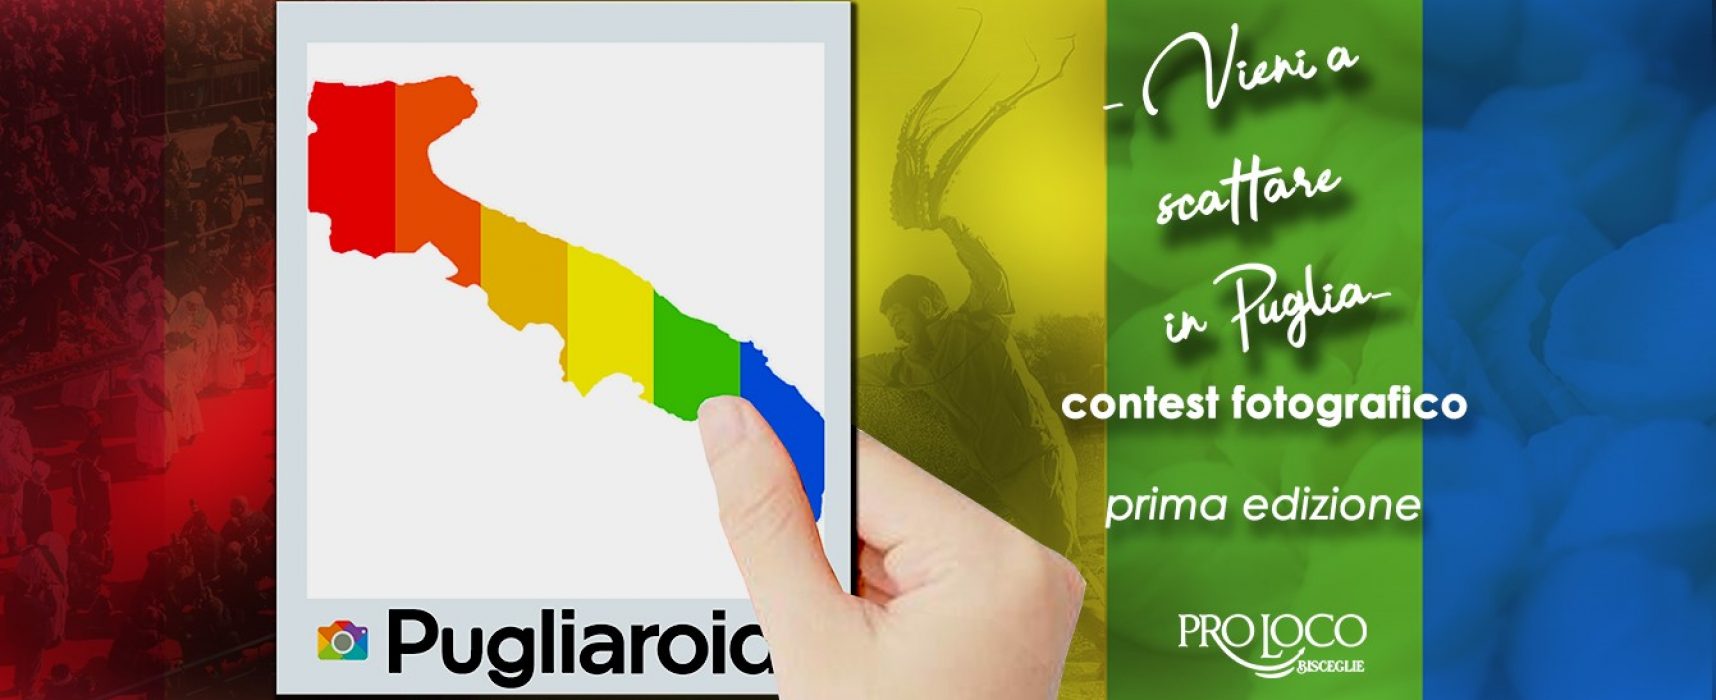 “Pugliaroid: Vieni a scattare in Puglia”, al via il contest della Pro Loco di Bisceglie